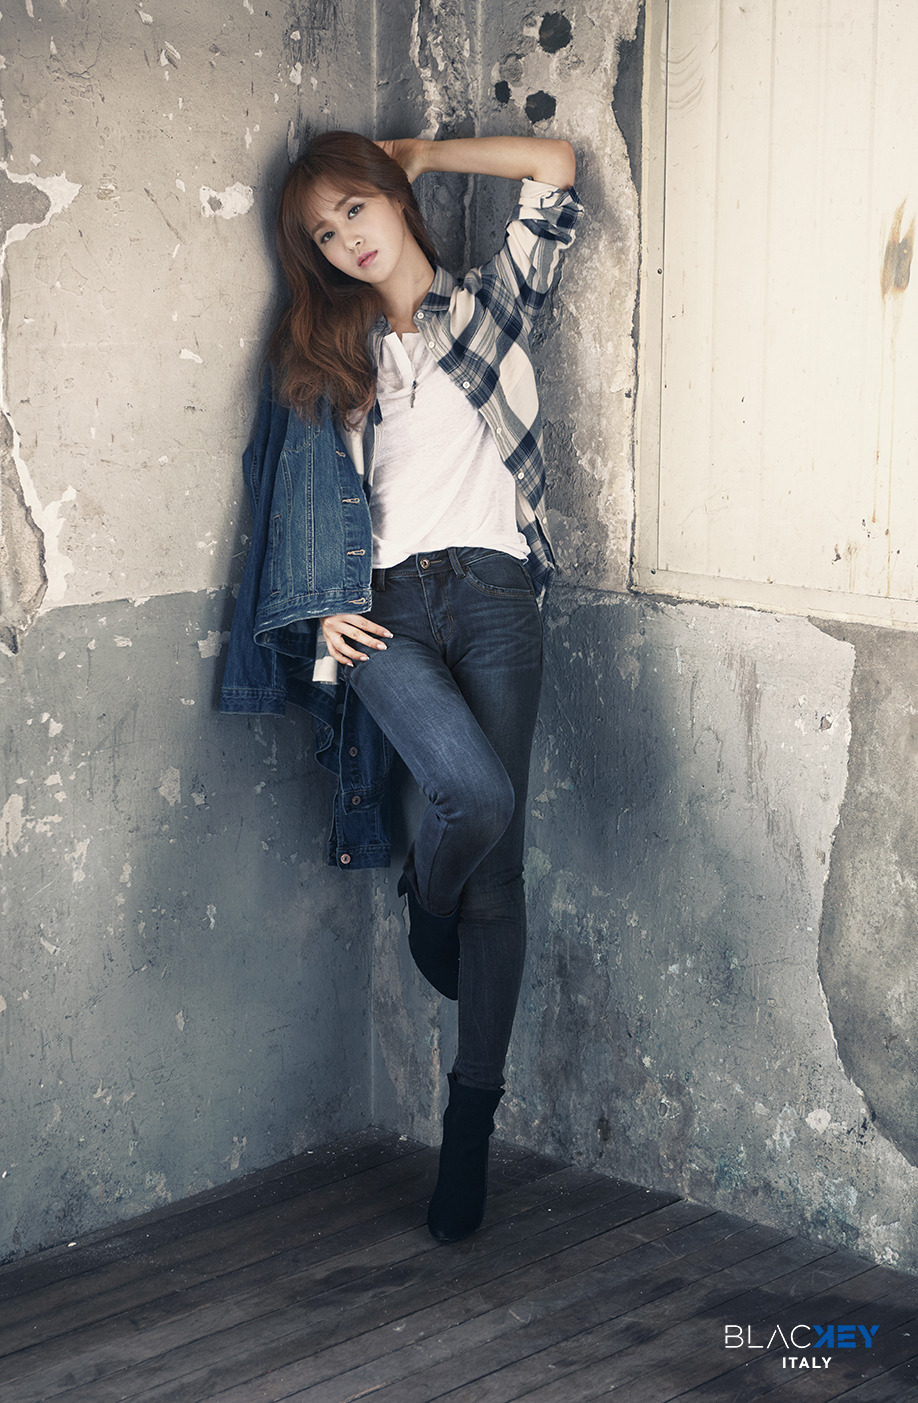 [OTHER][25-08-2016]Yuri trở thành người mẫu mới cho Dòng Jeans - "블라키/BLACKEY" 276B68445850E73C1574D0